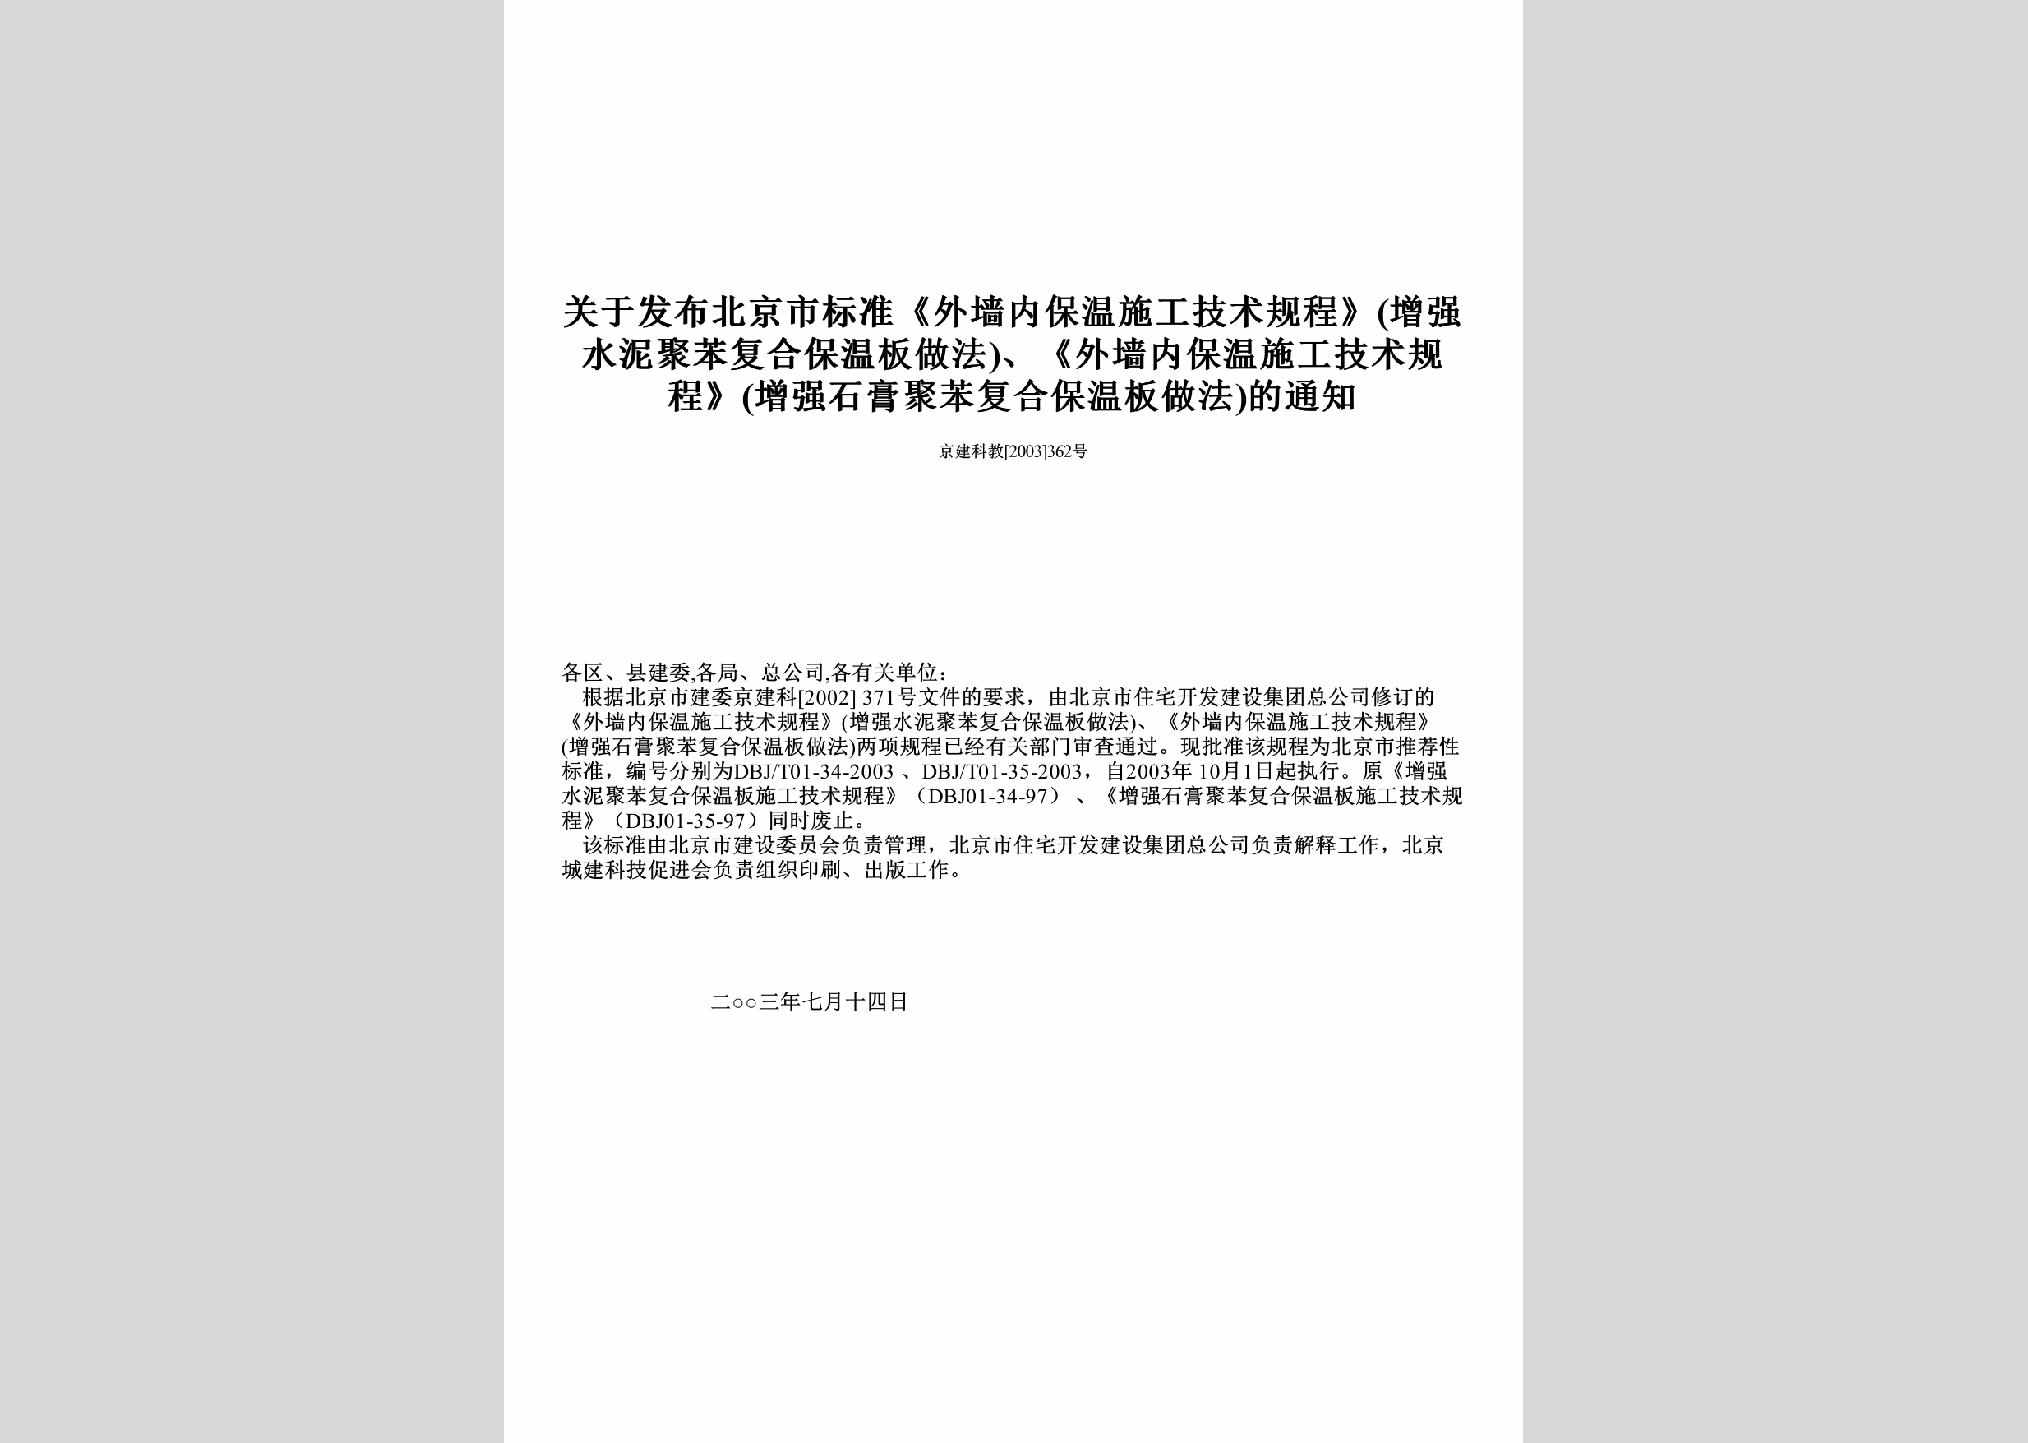 京建科教[2003]362号：关于发布北京市标准《外墙内保温施工技术规程》(增强水泥聚苯复合保温板做法)、《外墙内保温施工技术规程》(增强石膏聚苯复合保温板做法)的通知